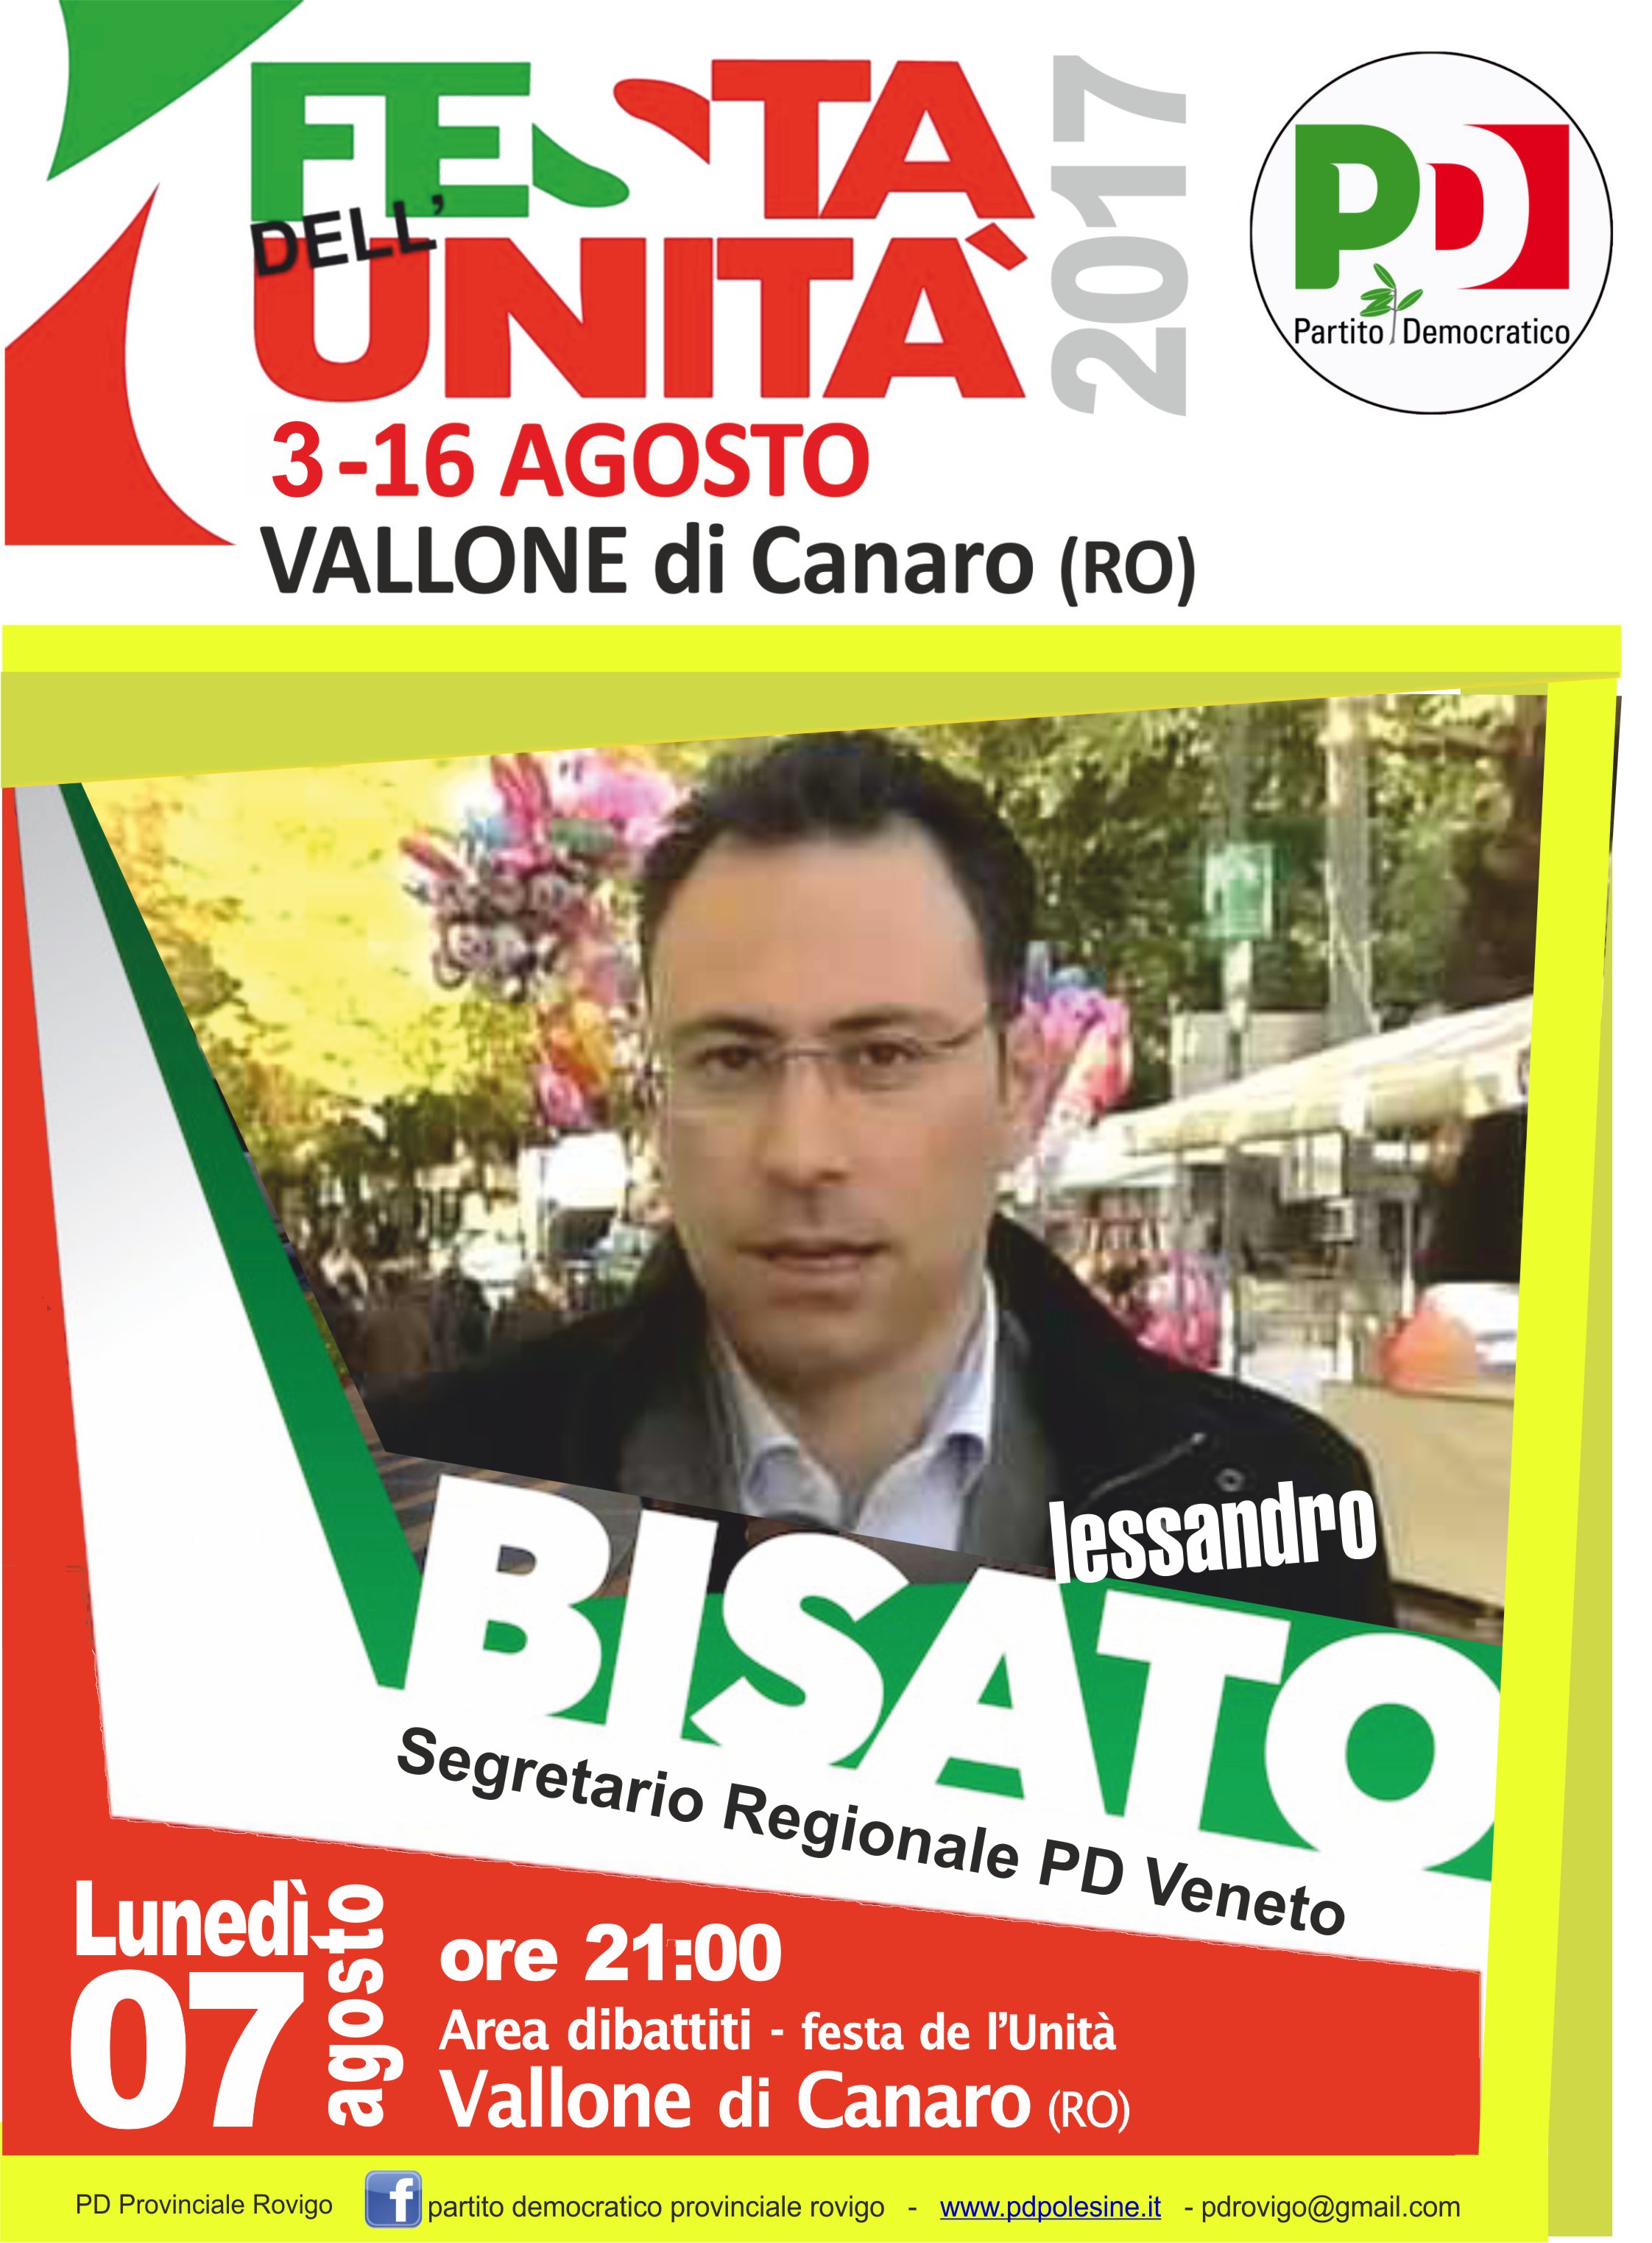 Al momento stai visualizzando Canaro 7 agosto alla festa dell’unità sarà presente il Segretario Regionale Veneto Alessandro Bisato